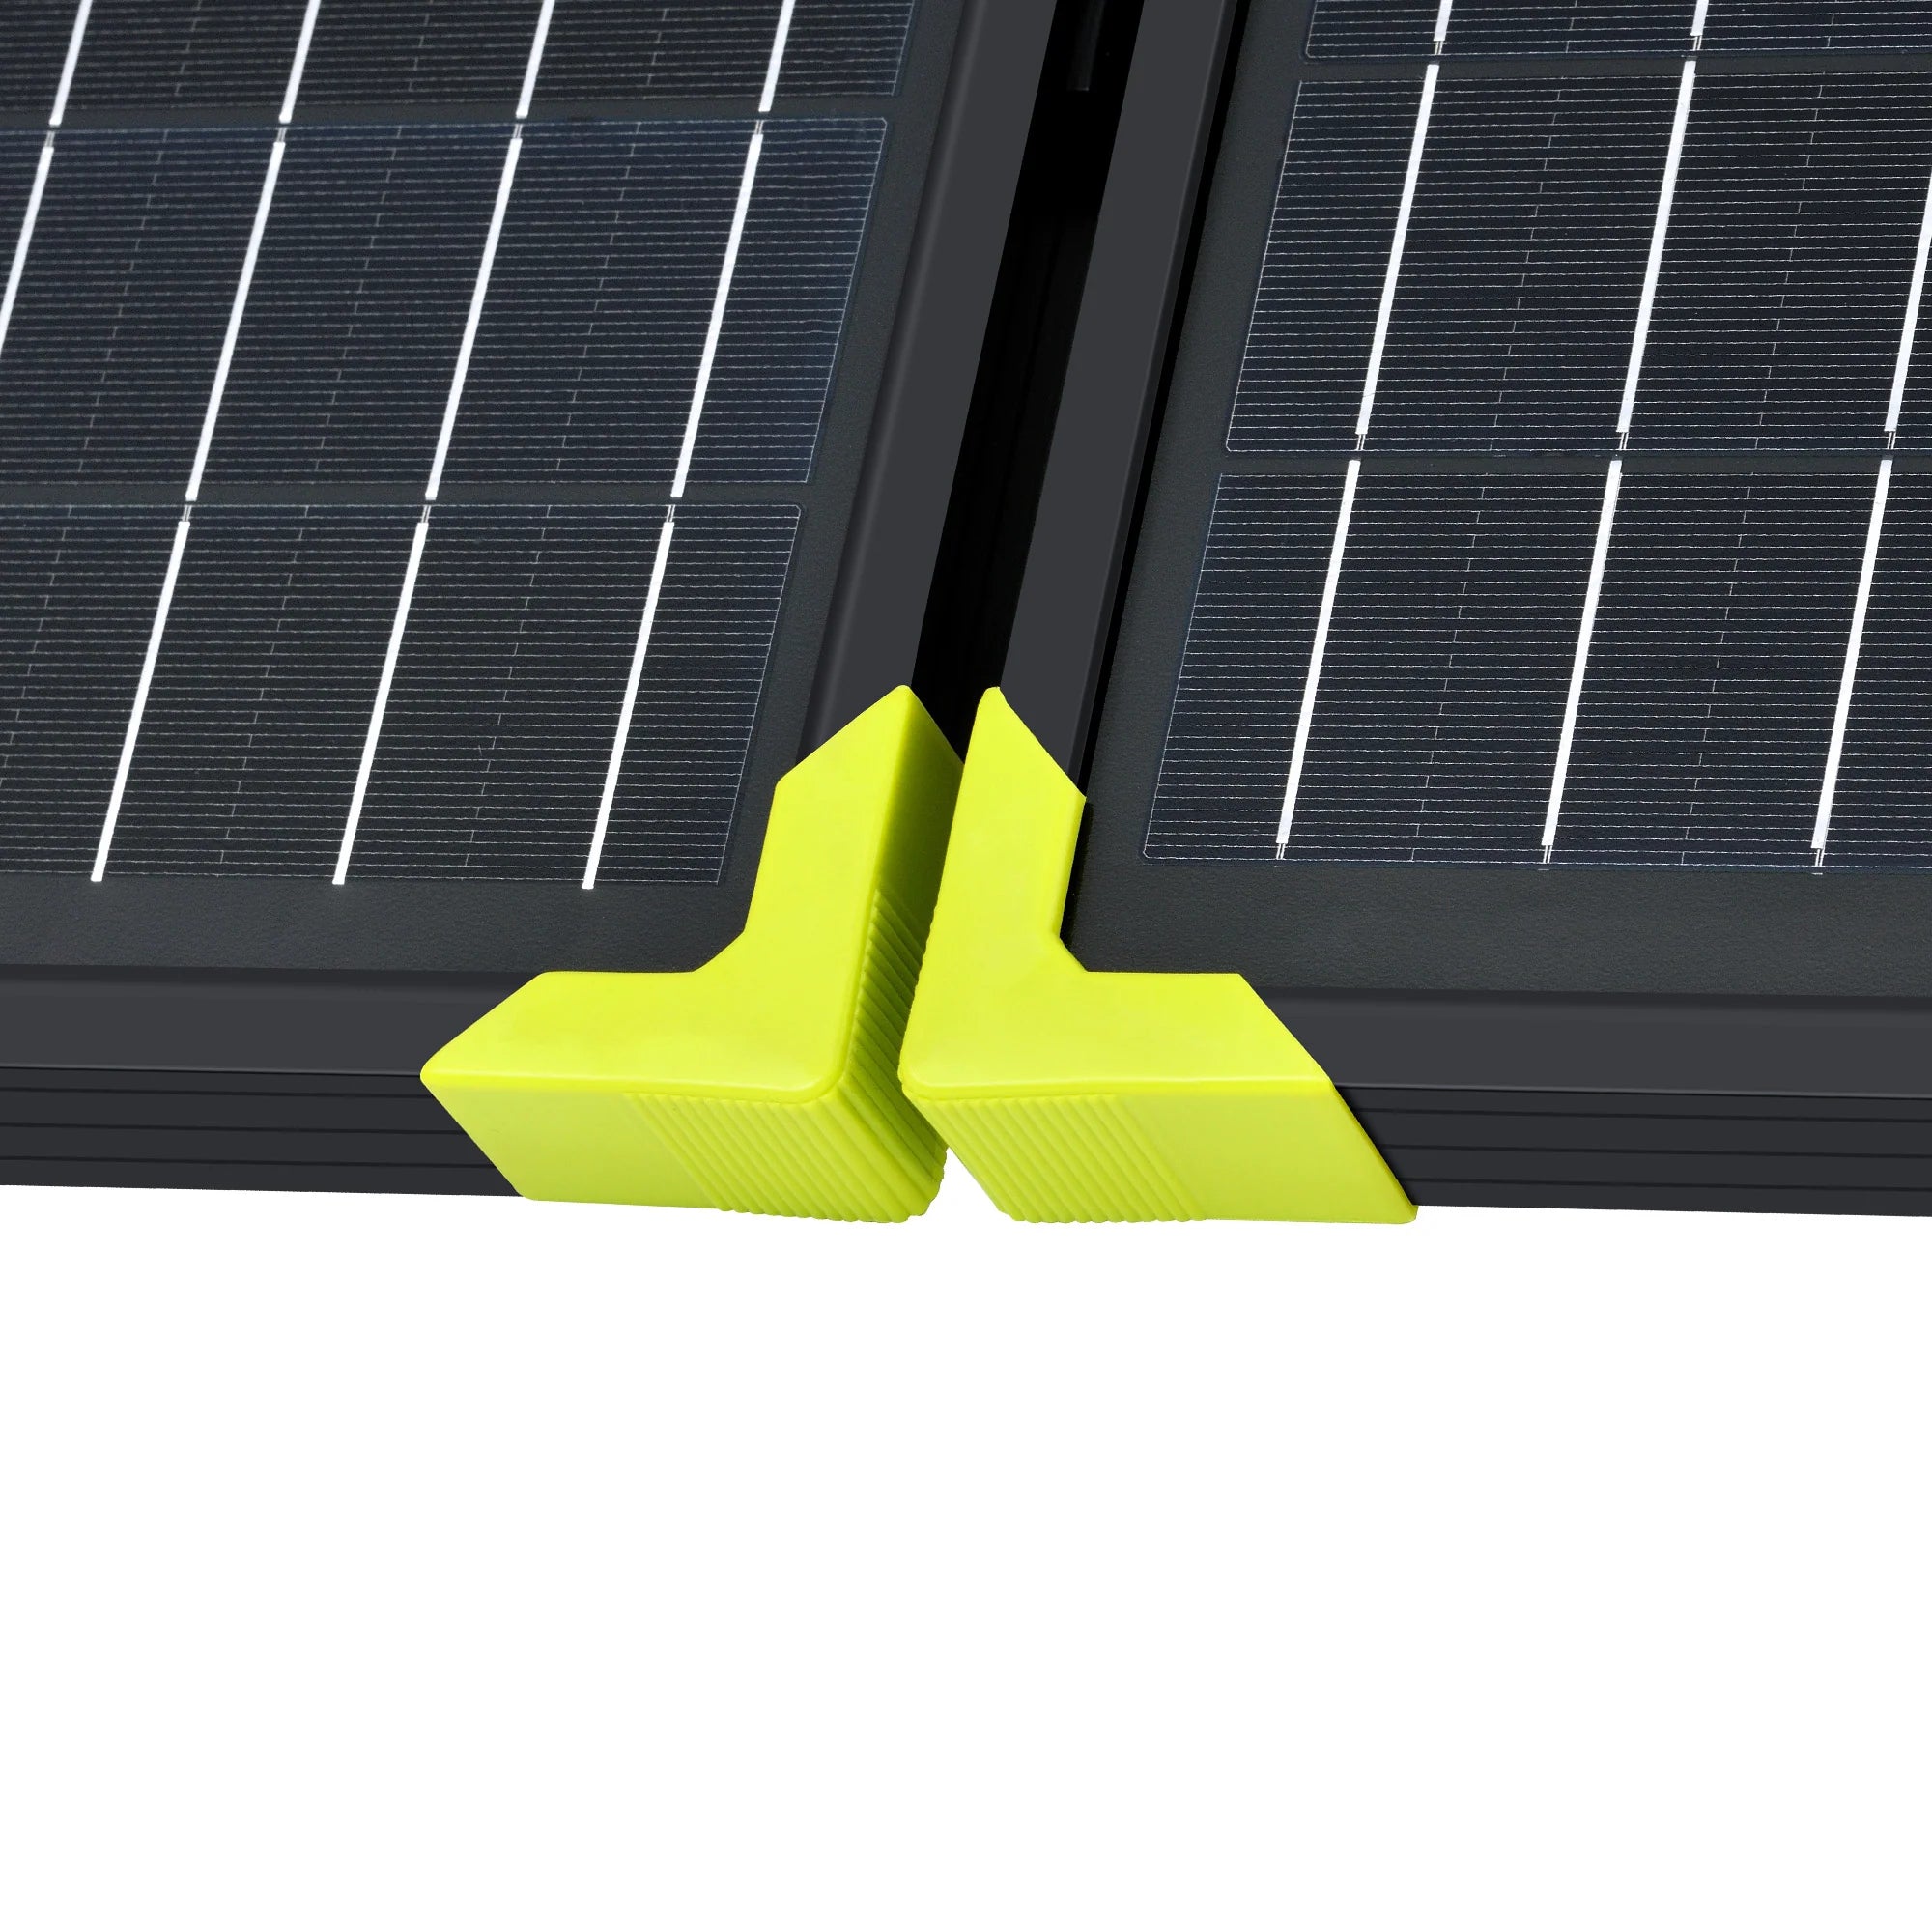 Richsolar Mega 200 Watt Briefcase Portable Solar Charging Kit